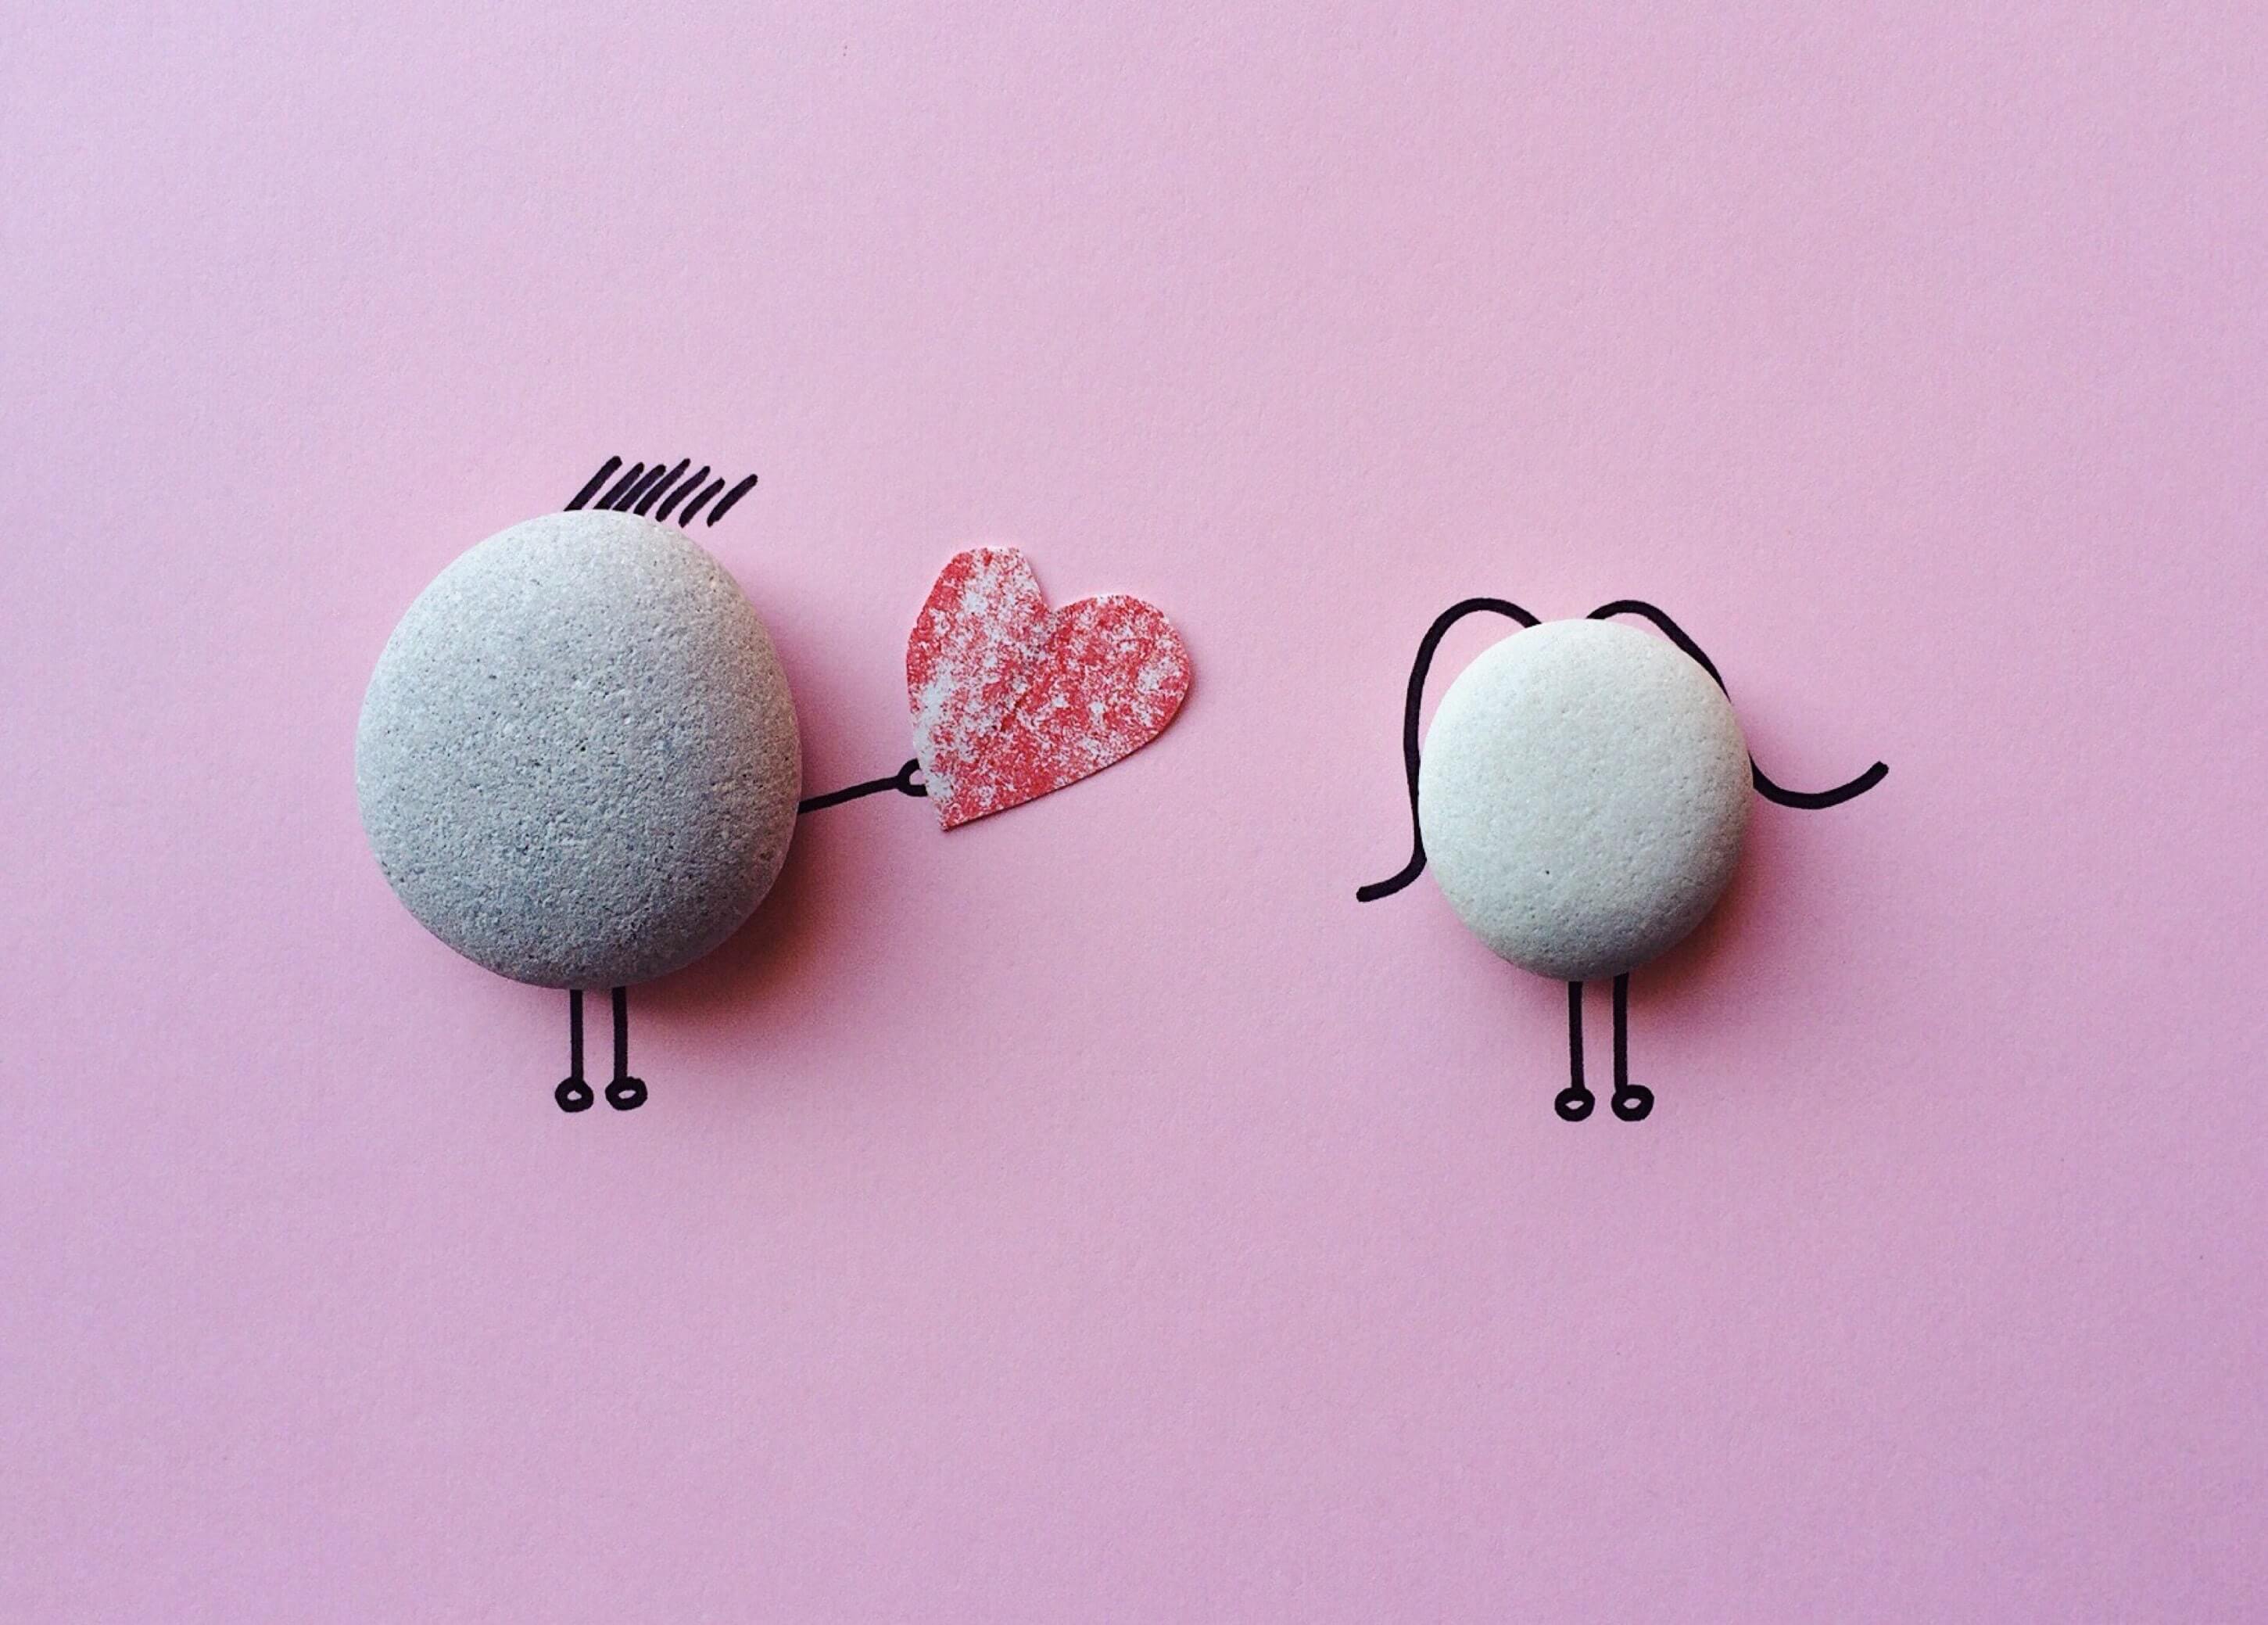 rocks illustrated in love